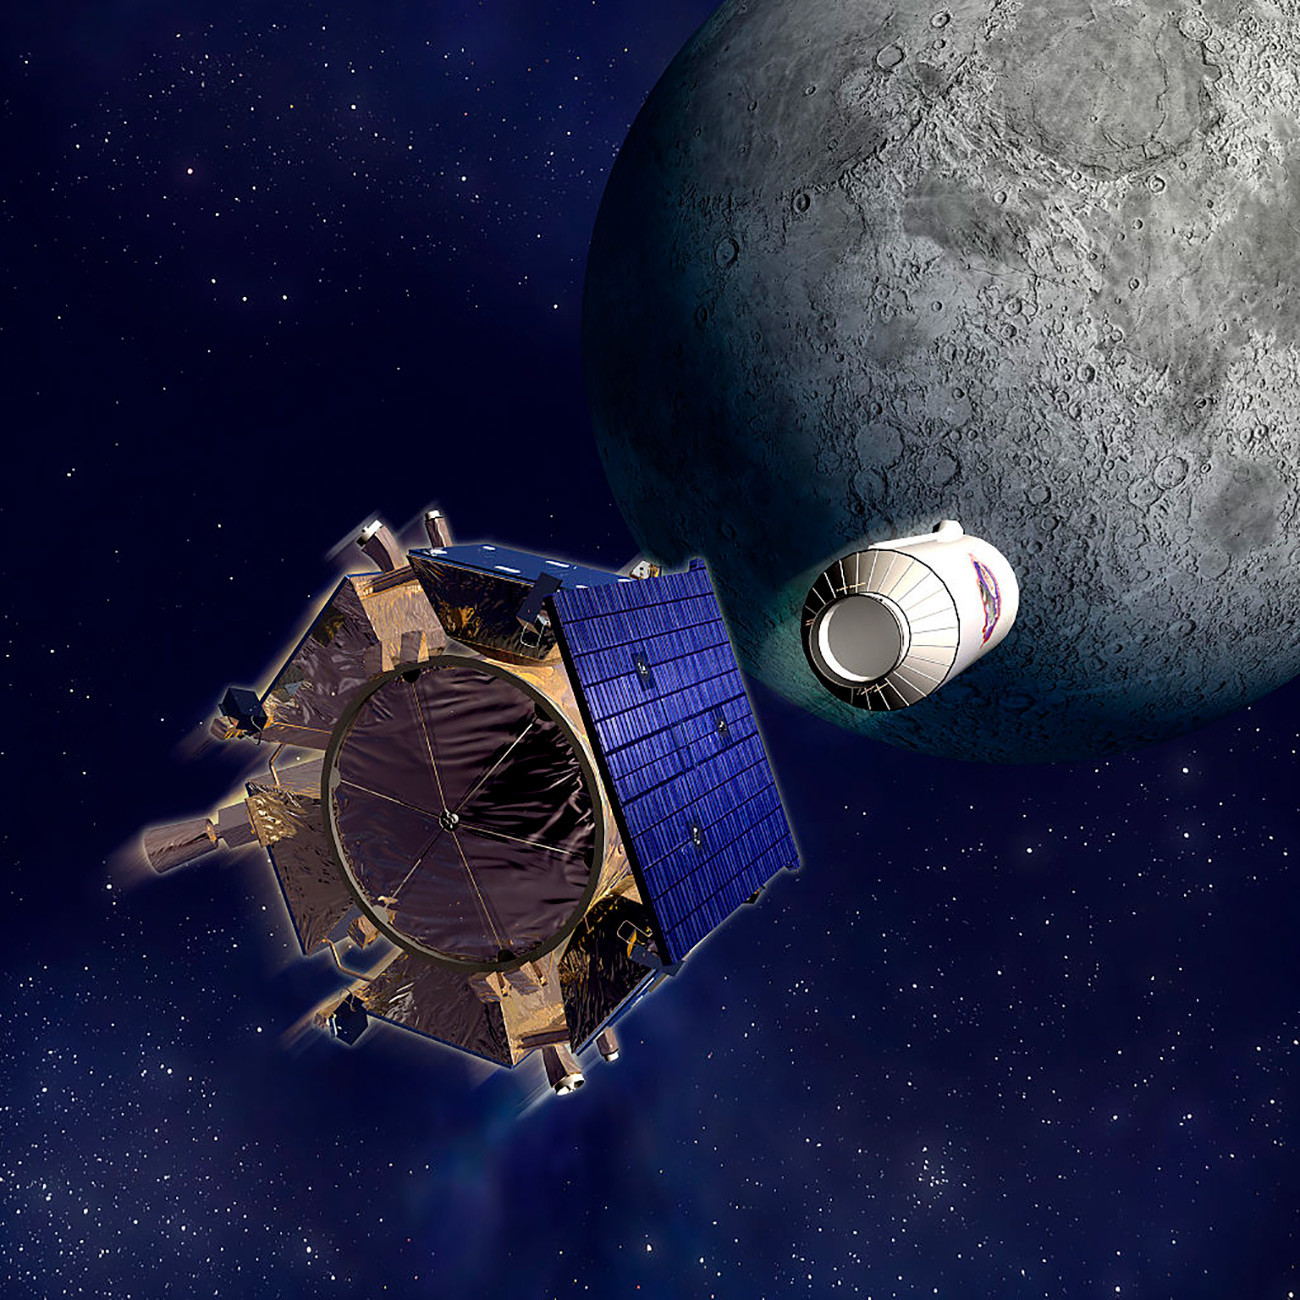 Илустрација међупланетарне космичке станице LCROSS и модула „Кентаур“ које је агенција NASA послала на месечев јужни пол 9. октобра 2009. године. „Кентаур“ је ударцем у месечев кратер подигао облак прашине који је затим анализиран уређајима на станици LCROSS, а резултати су послати на земљу.